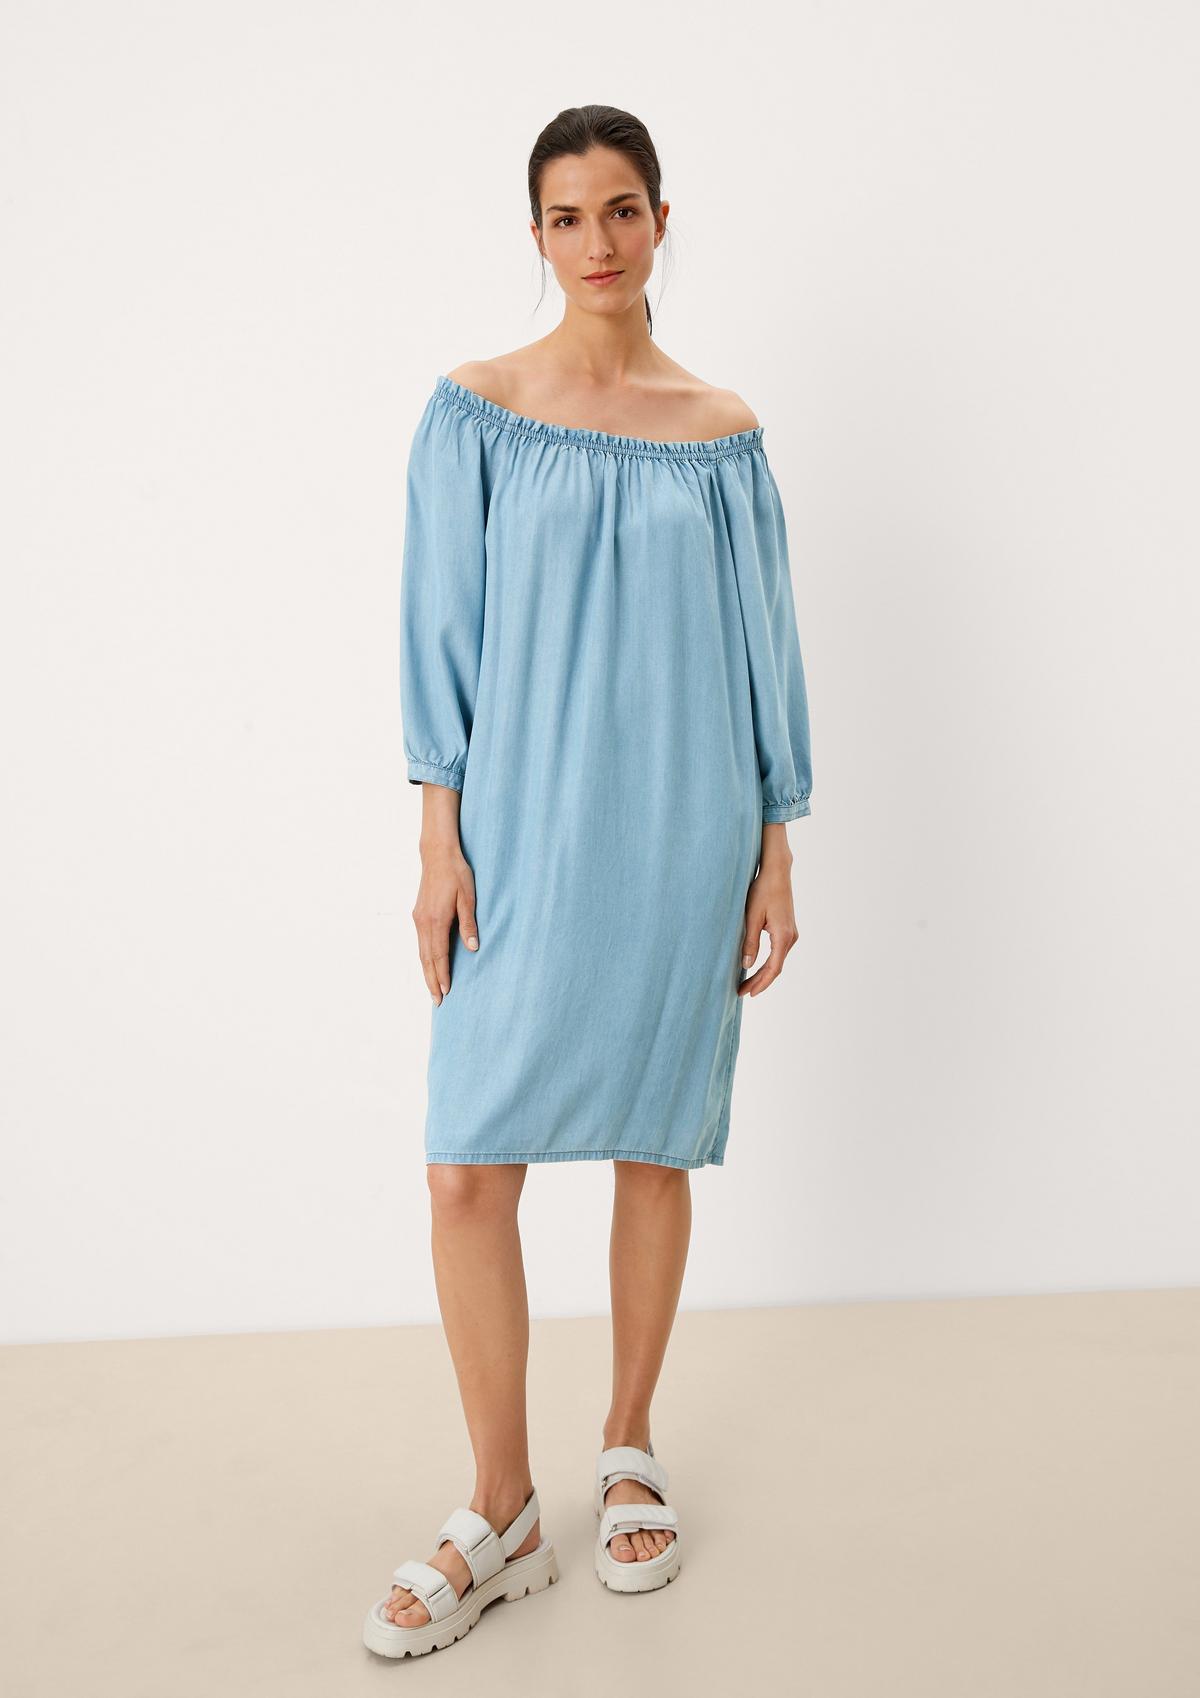 Supergünstiger Neuartikel im Versandhandel Midi-Kleid mit Rüschendetail - blassblau